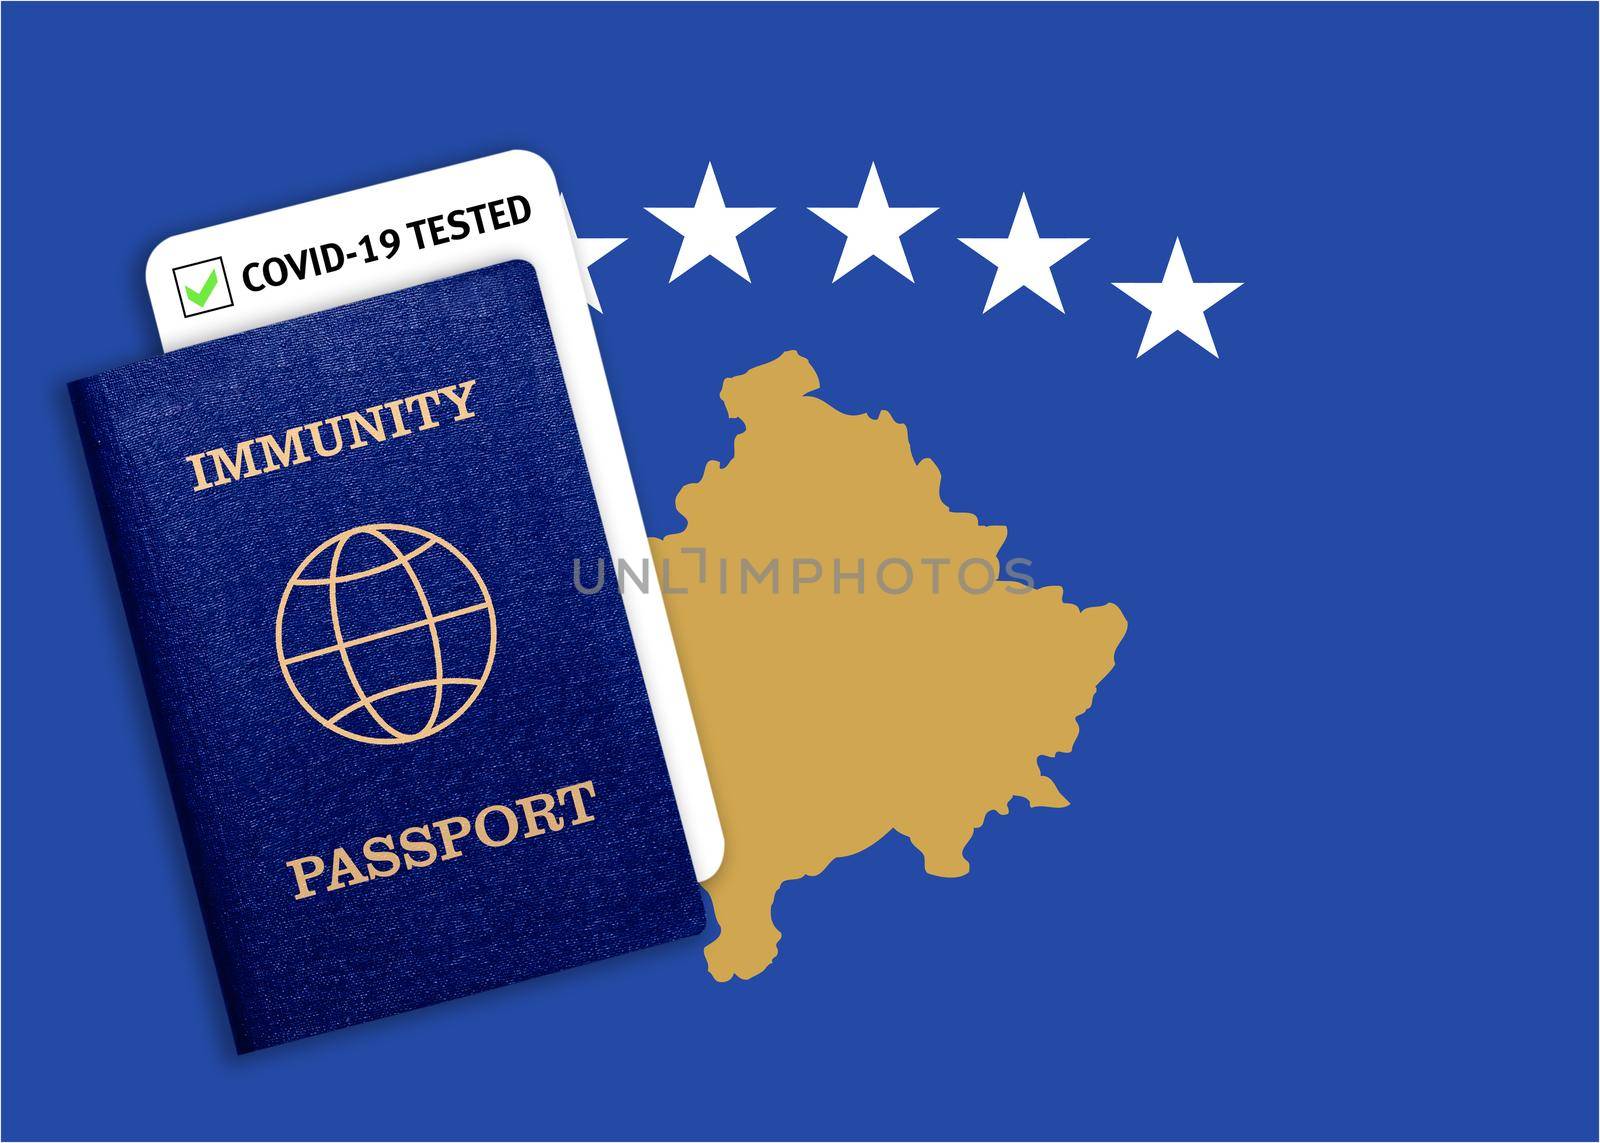 Immunity passport and coronavirus test with flag of Kosovo by galinasharapova